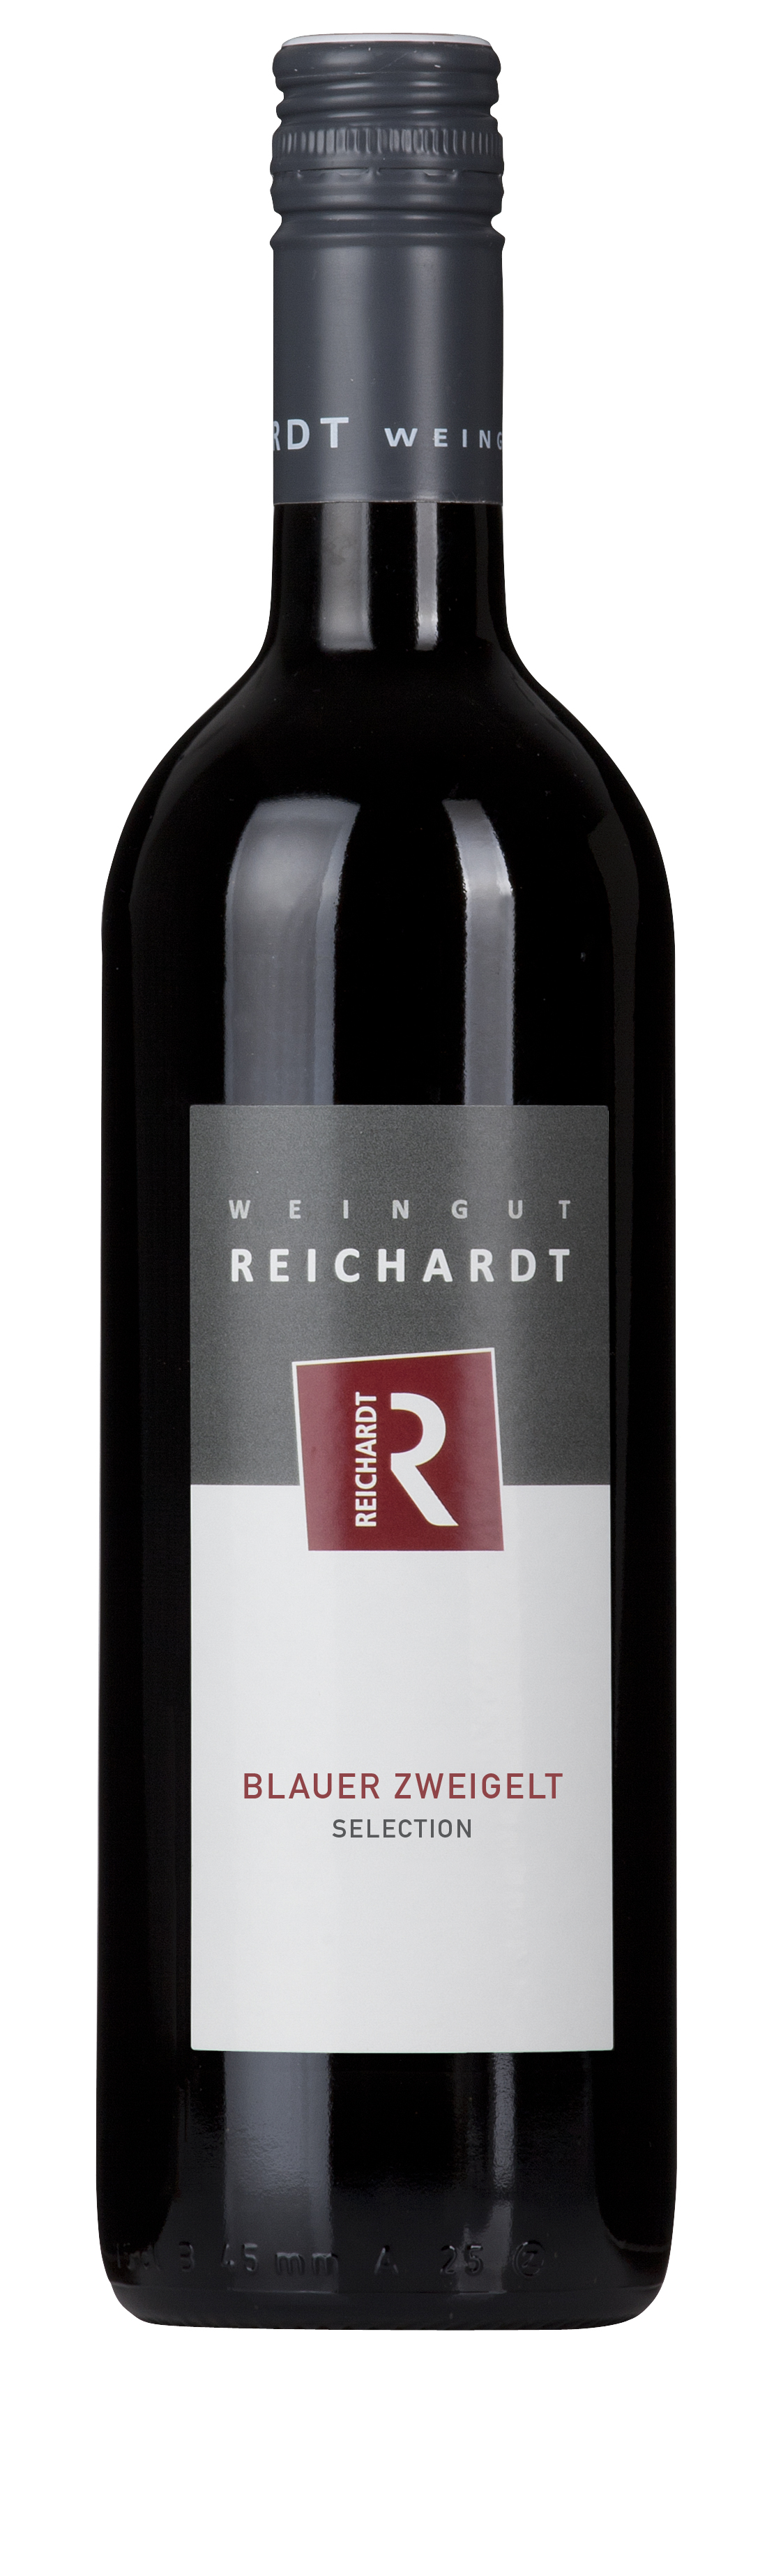 Blauer Zweigelt - 2020 Selection Weingut-Reichardt